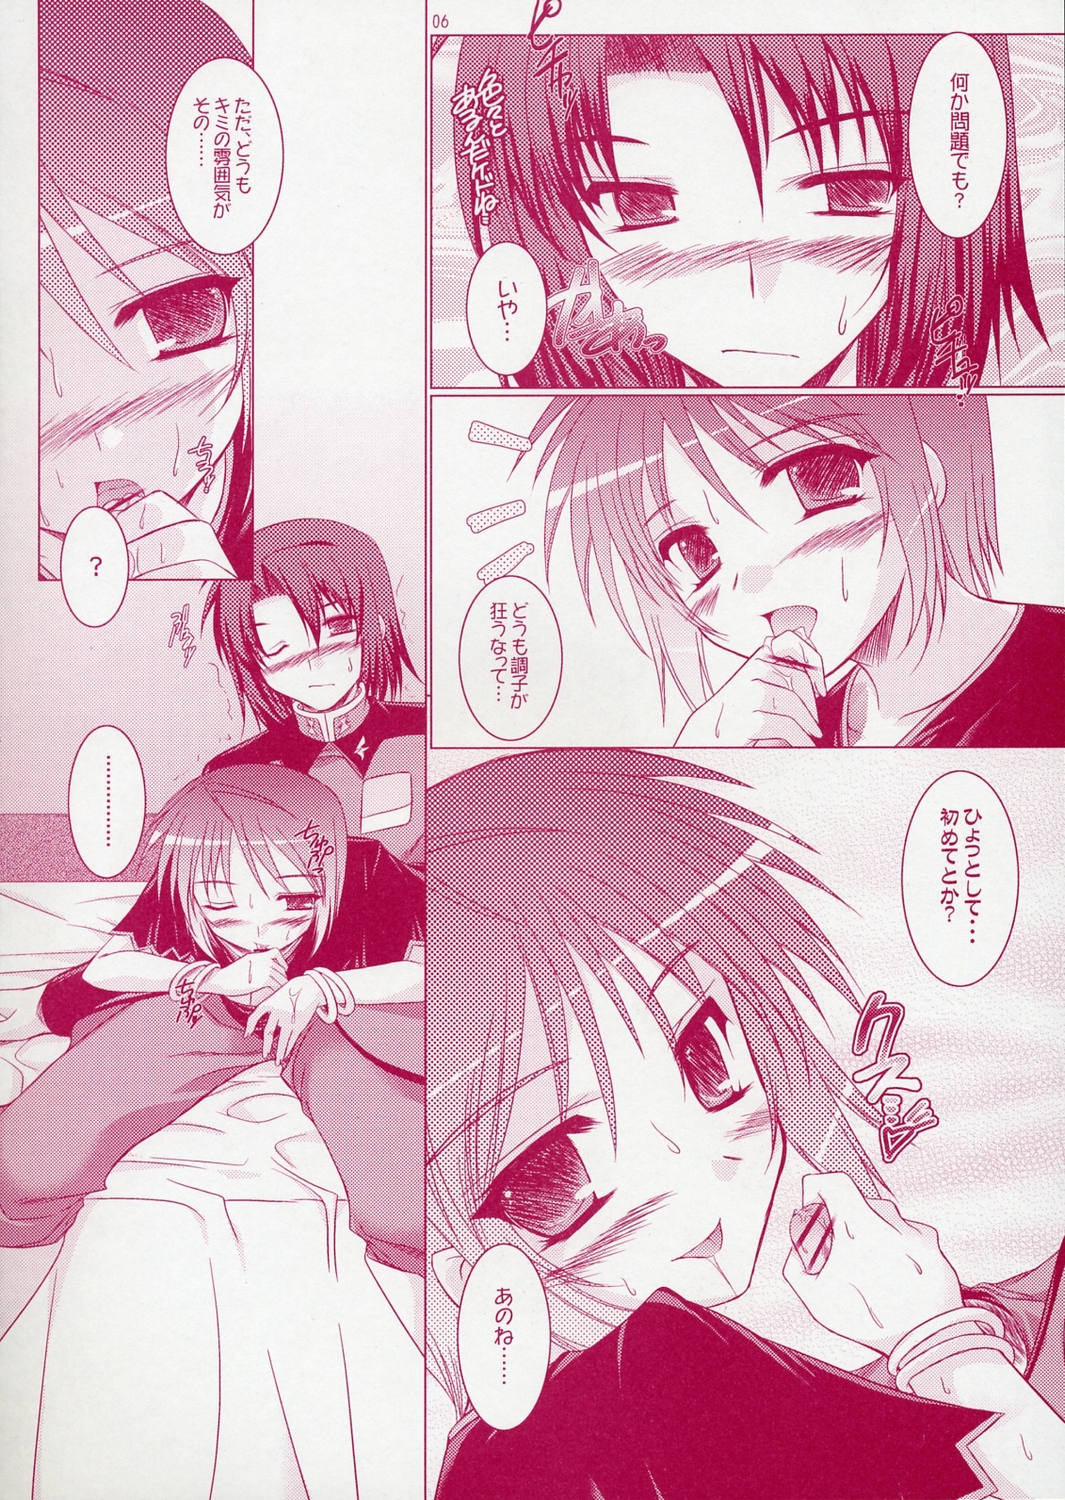 (SC28) [Ponbikiya, Suirankaku (Ibuki Pon)] REDDISH PURPLE-02B (Gundam Seed Destiny) page 5 full